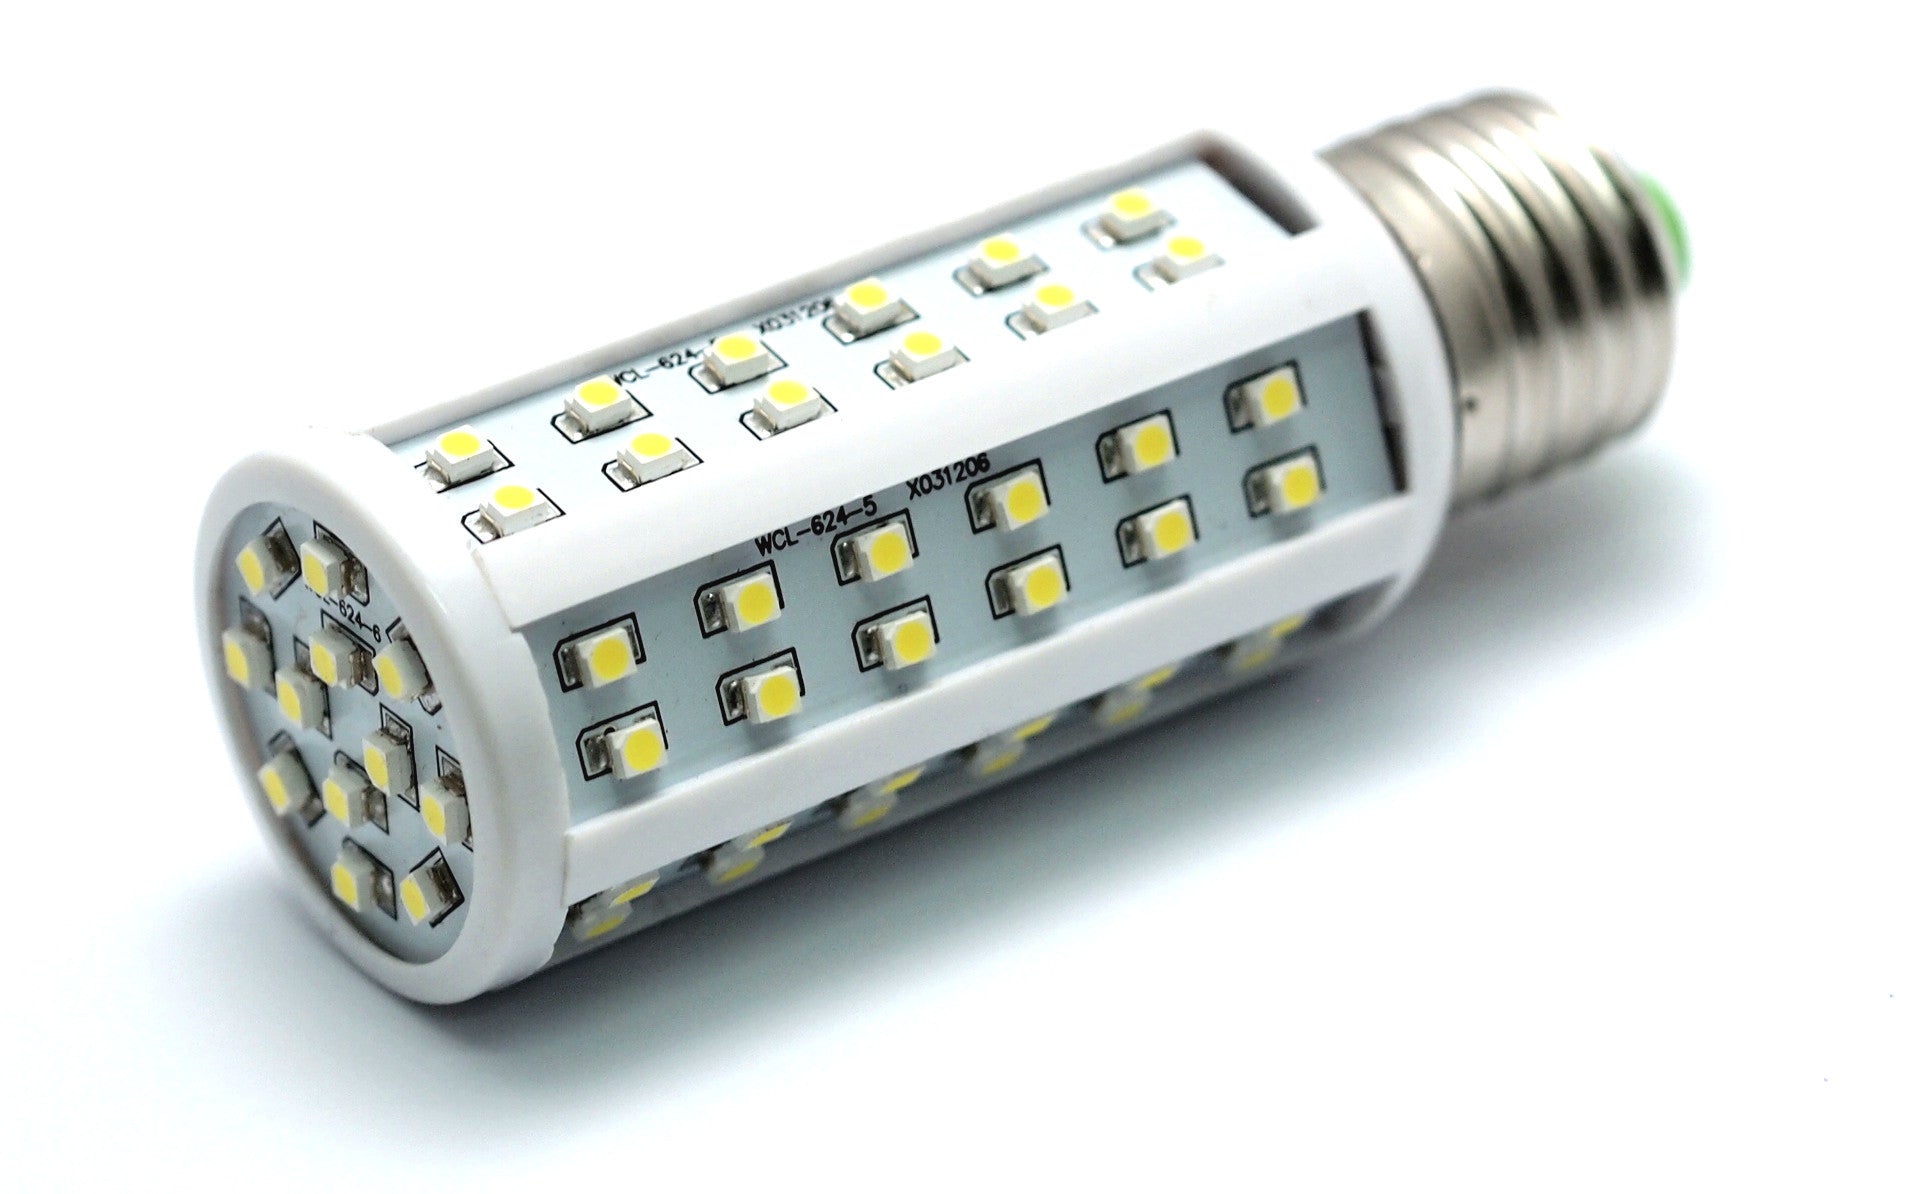 T10 2835 Chipset DC 12V Wedge LED Light Bulb 168 194 Replacement 2.4W -  12VMonster Lighting